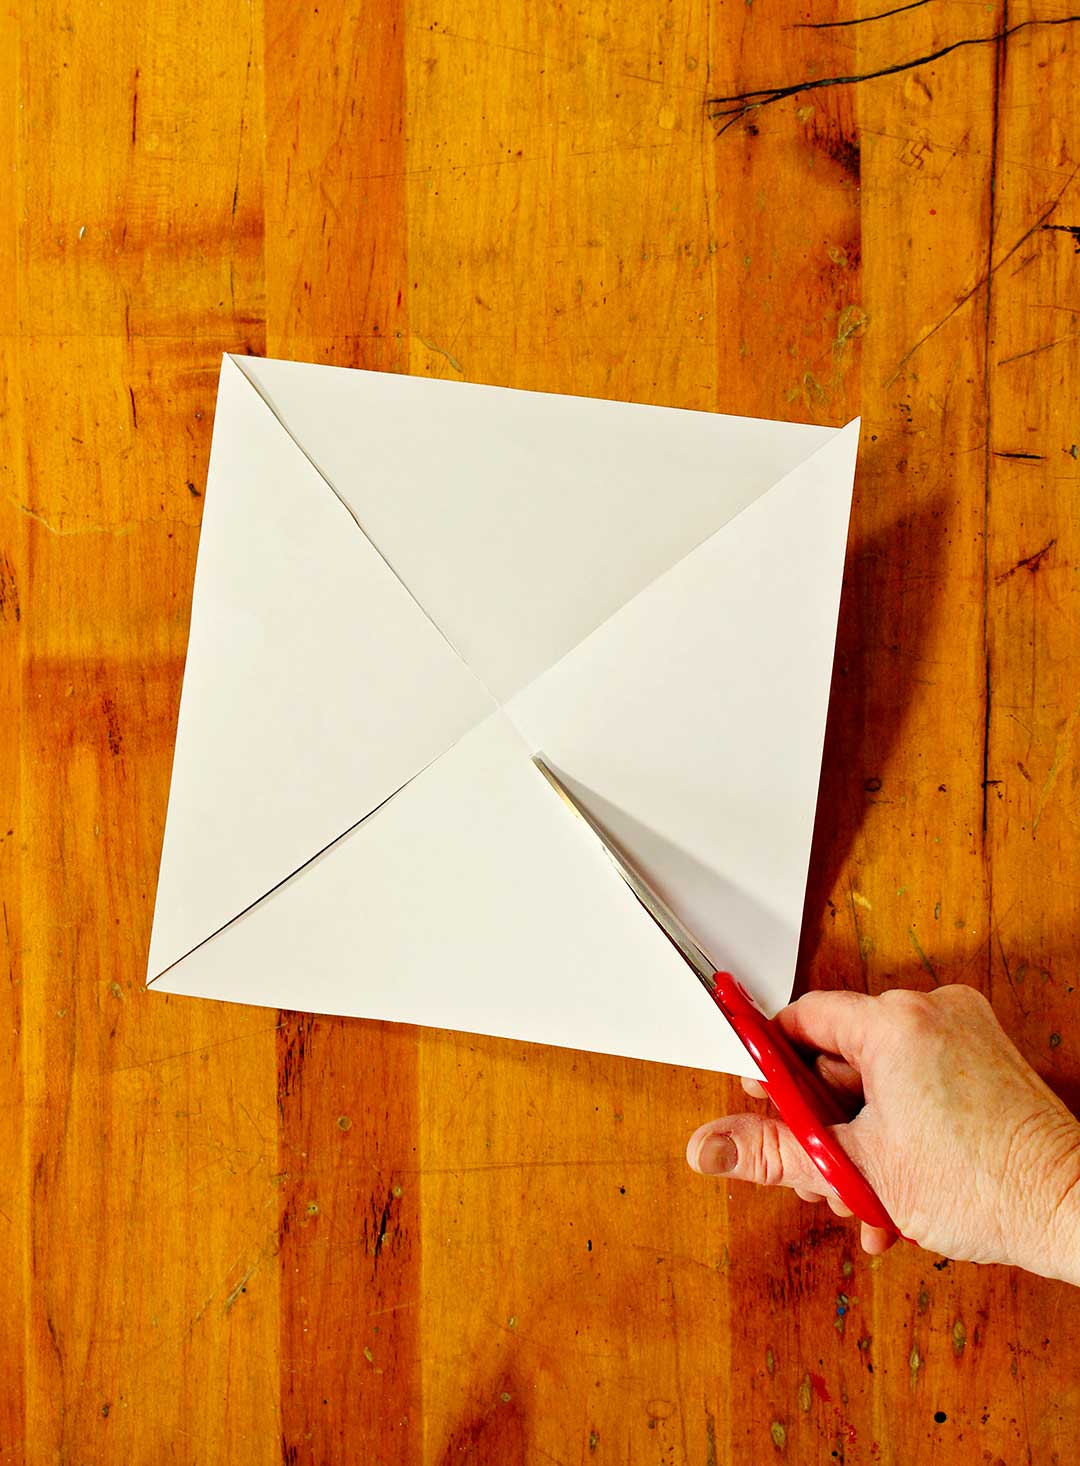 Dos blanc du papier à motif montrant la coupe de quatre lignes diagonales vers le centre.